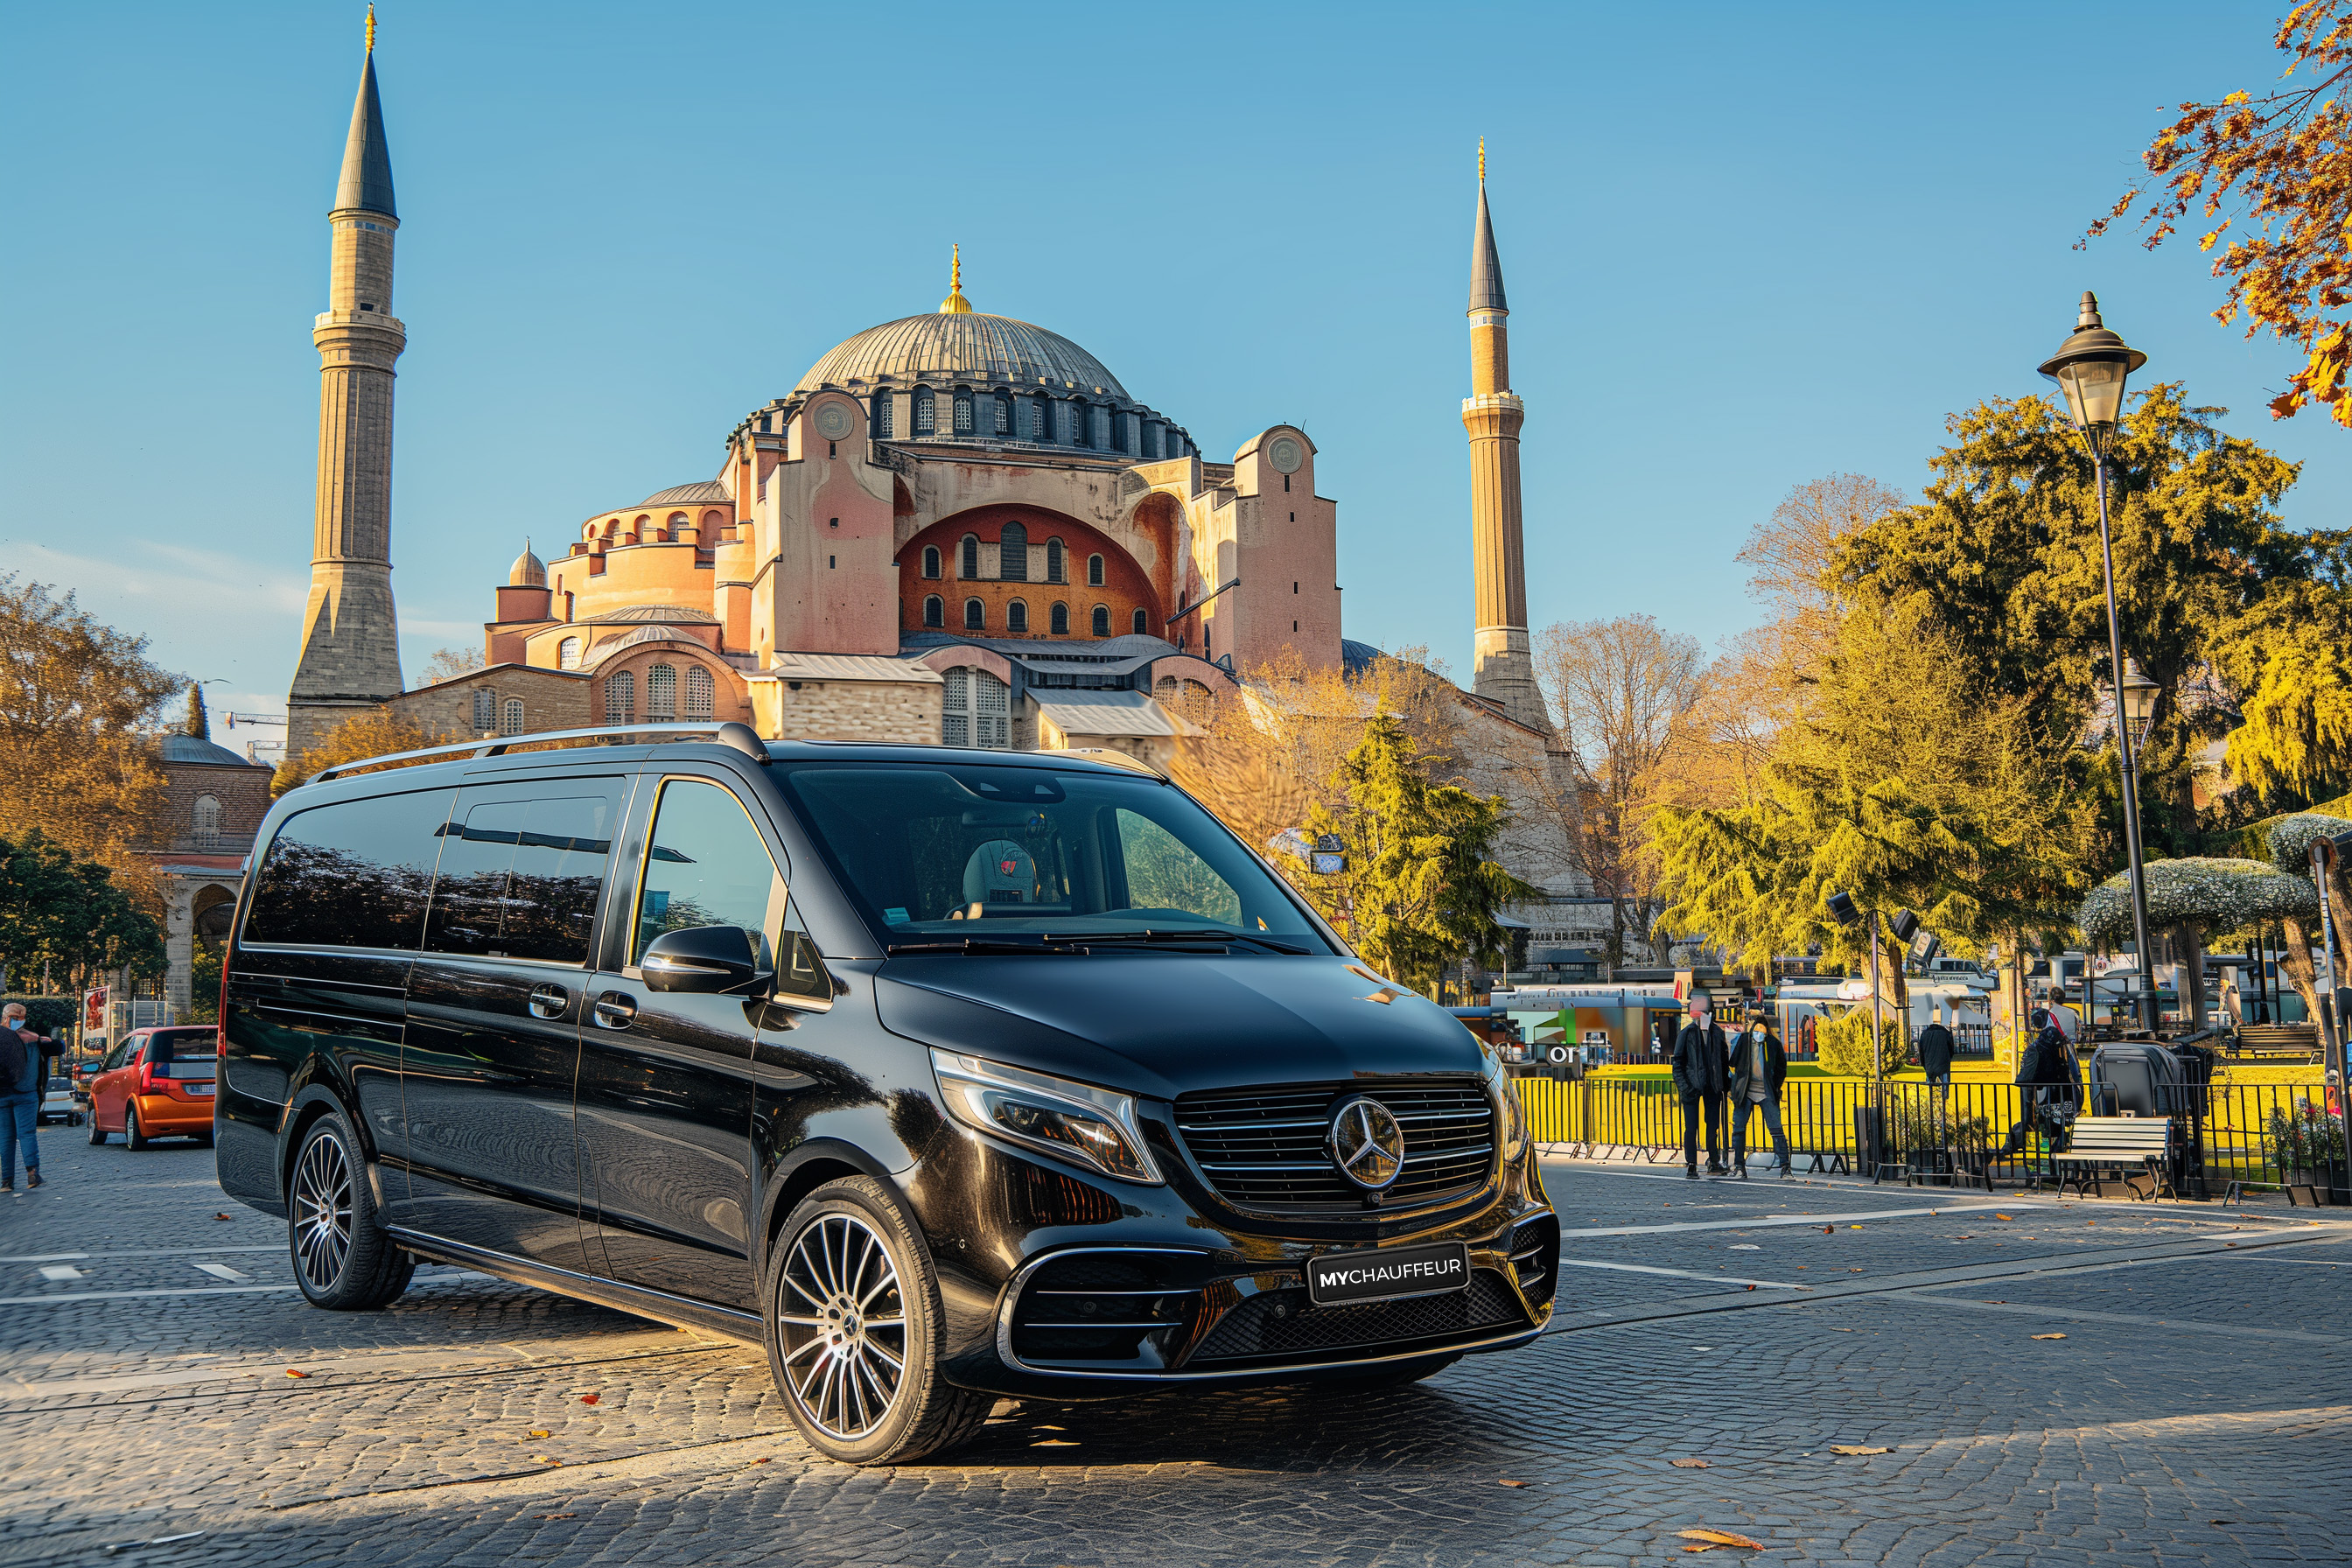 Stadtrundfahrt in Istanbul mit einer luxuriösen Maybach-Limousine